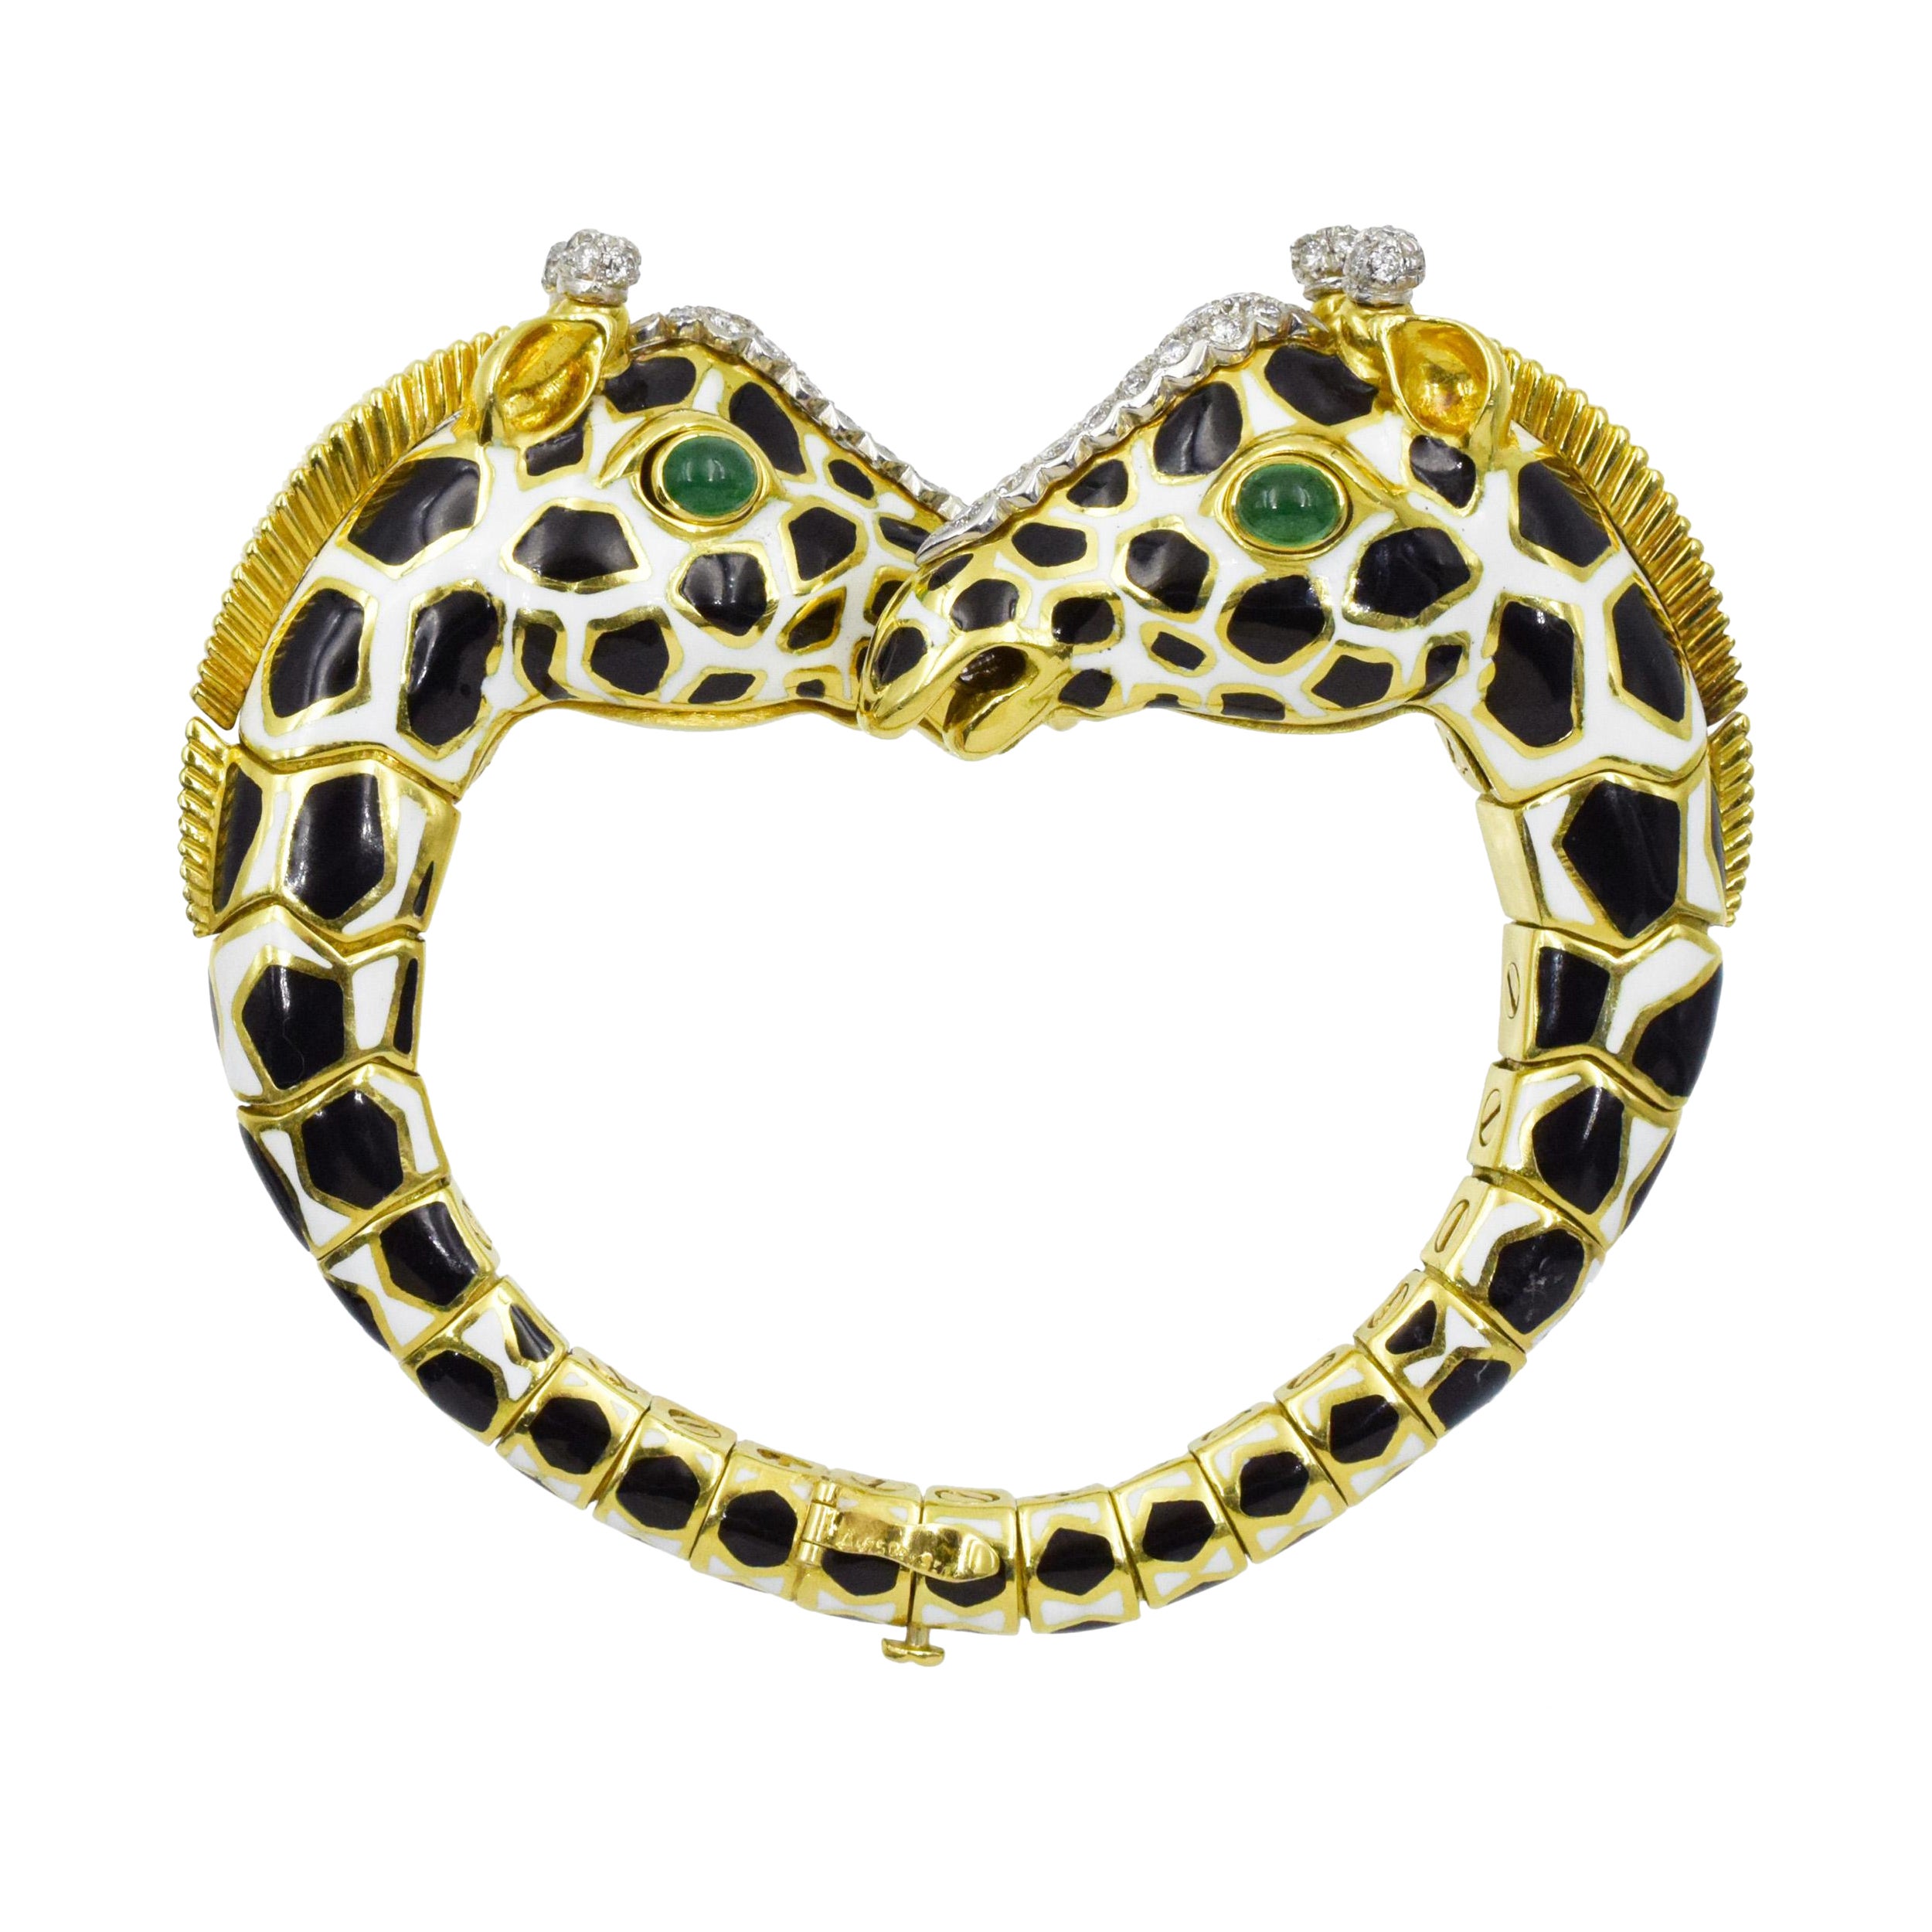 Armband „Giraffe“ aus Emaille, Smaragd und Diamanten von David Webb. 